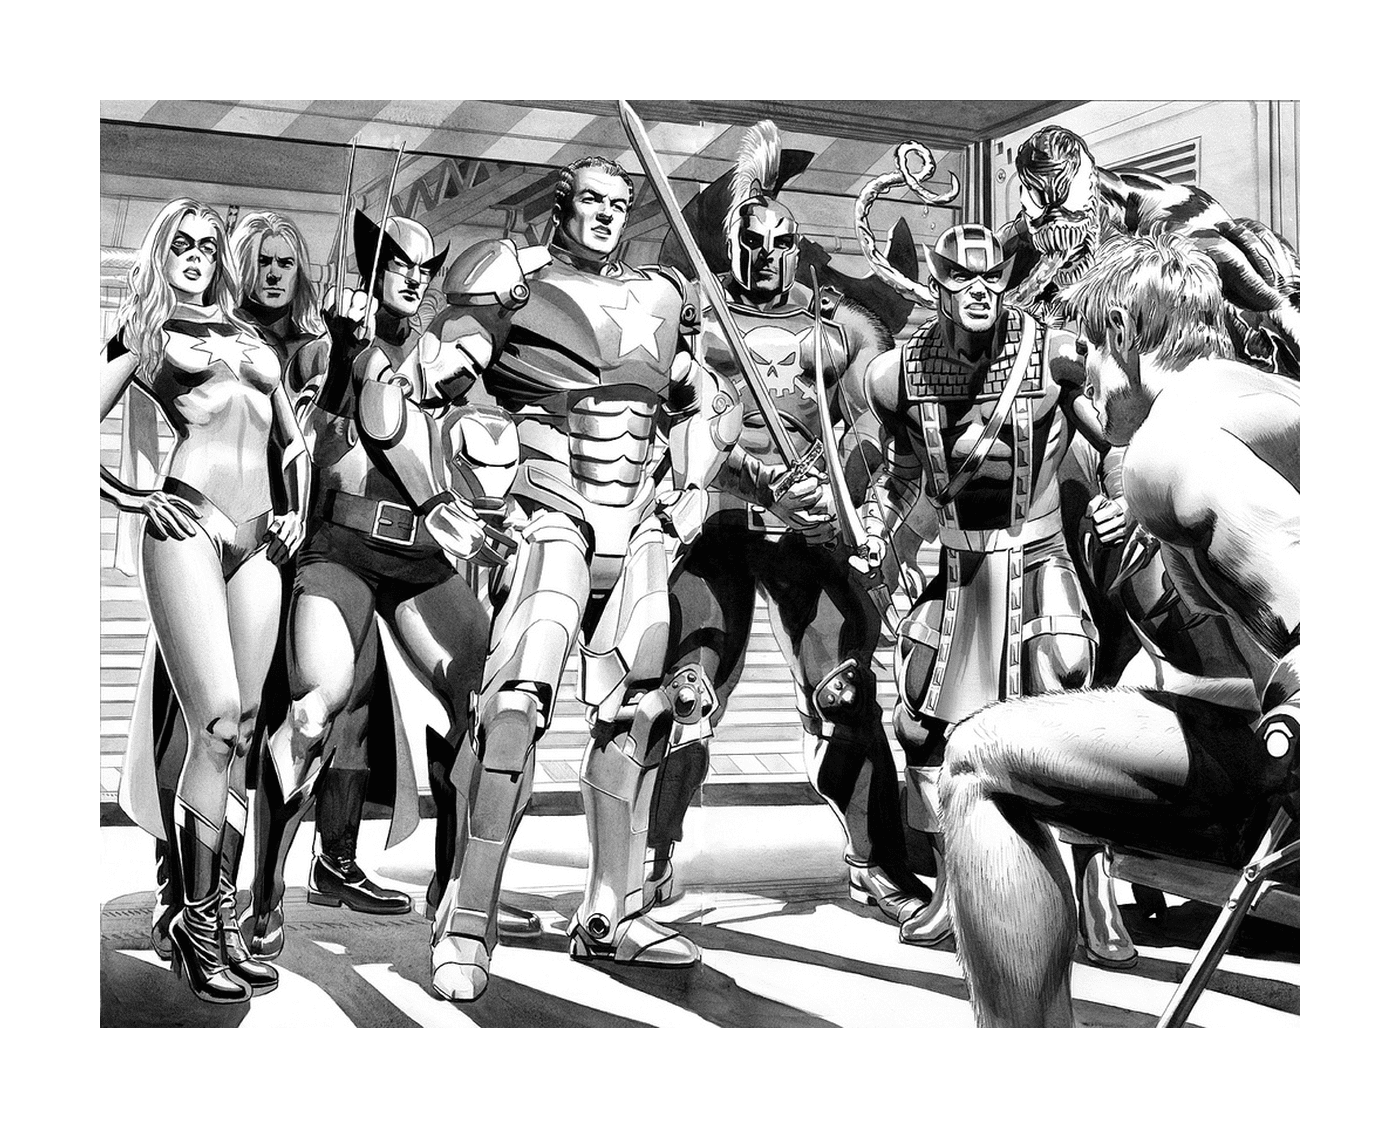  Una fotografia in bianco e nero di un gruppo di supereroi 